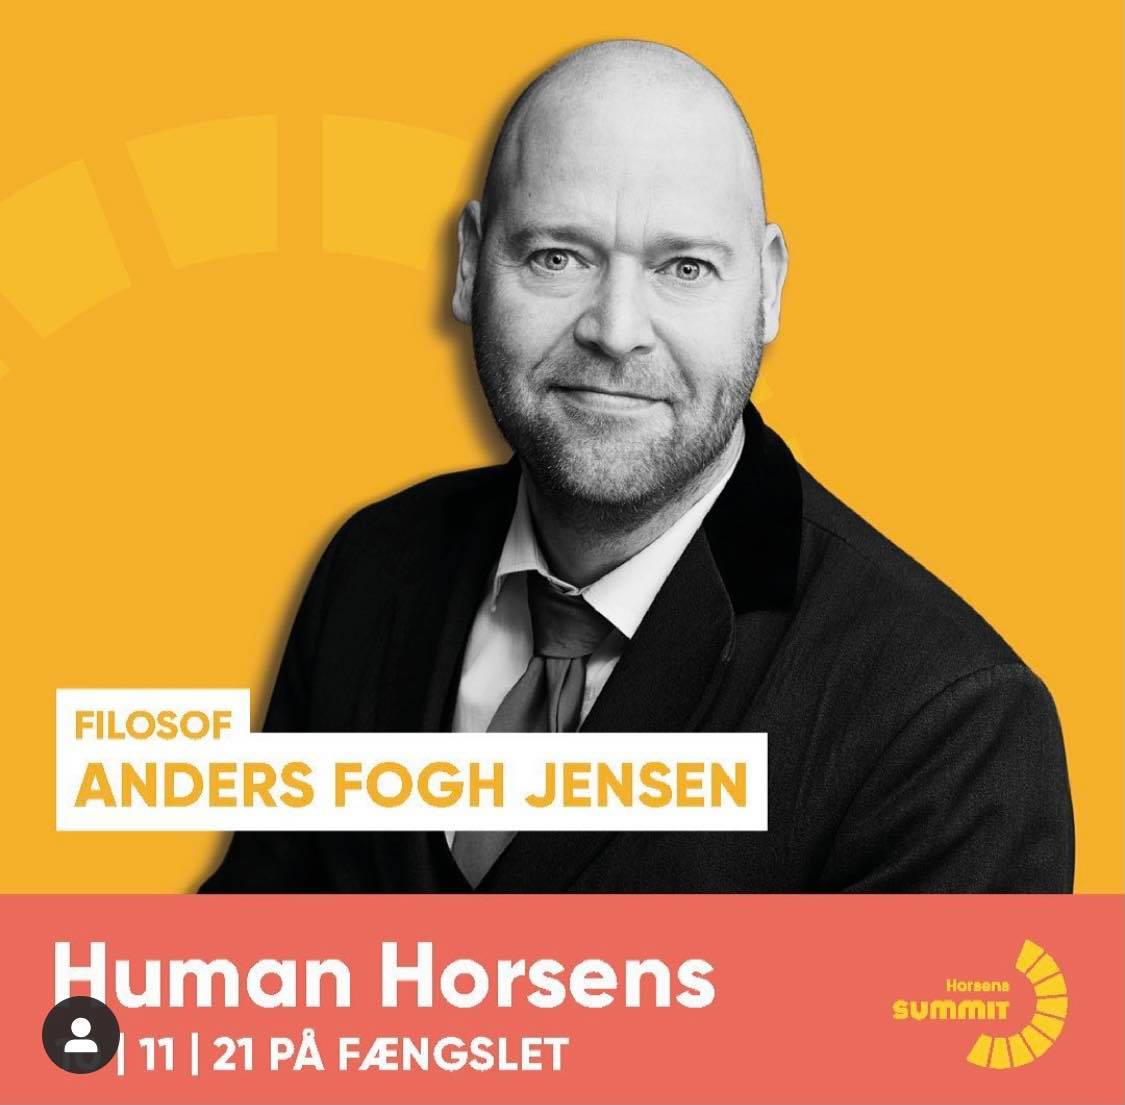 Anders Fogh Jensen